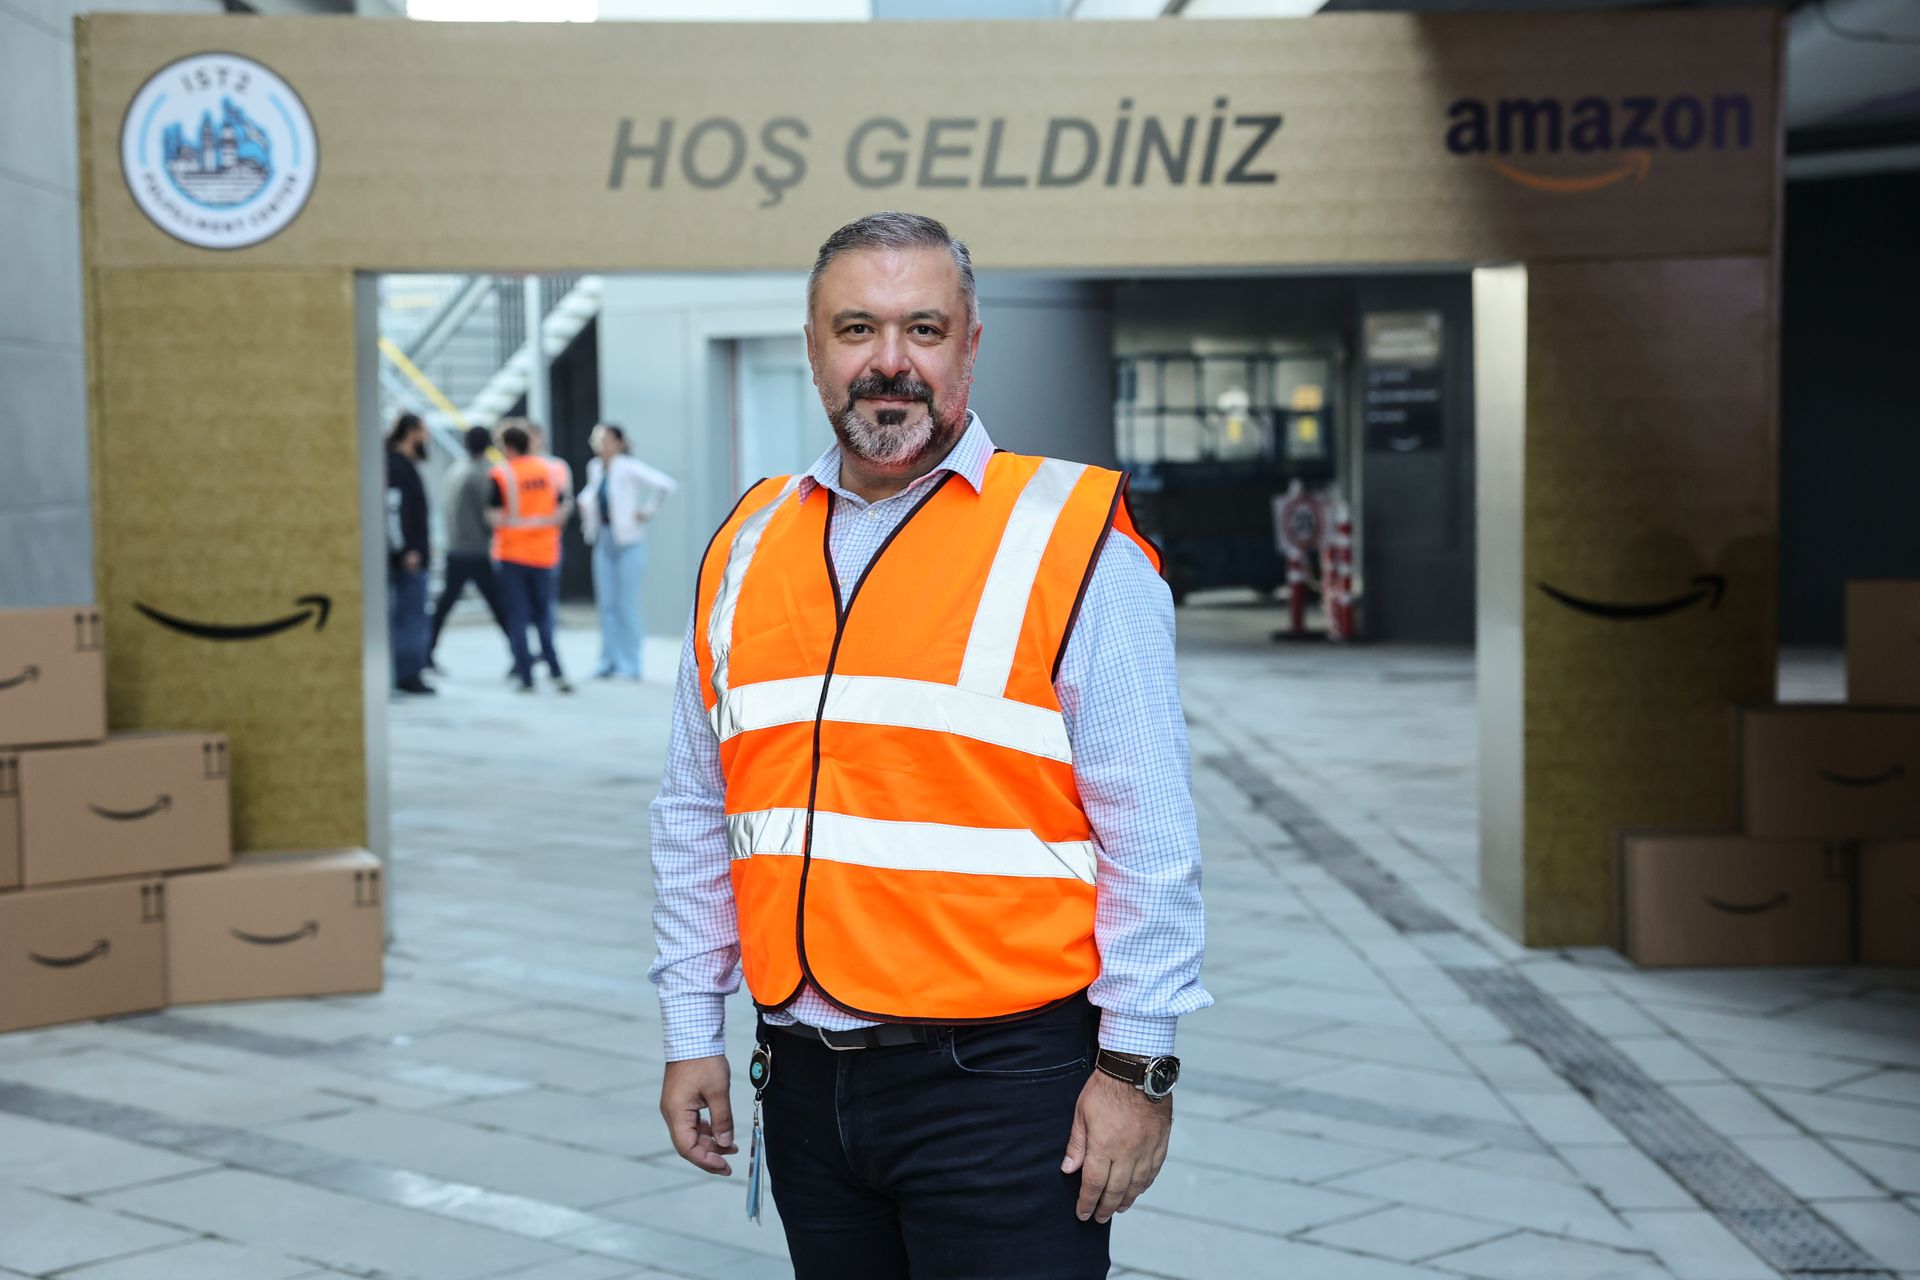 Amazon Türkiye: İlk lojistik üssü açıldı